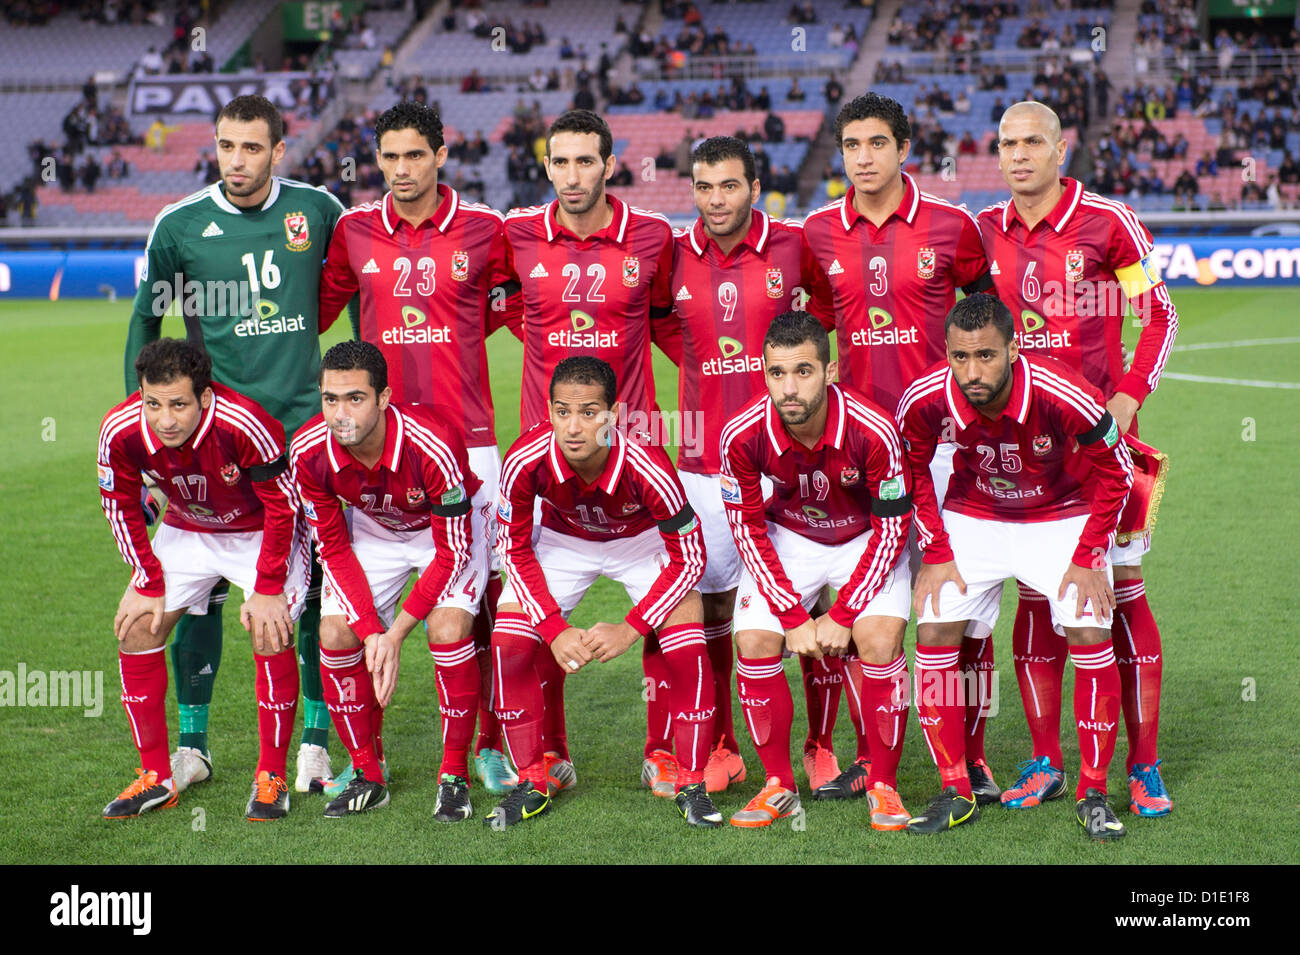 Al-Ahly team group line-up, DECEMBER 16, 2012 - Football ...